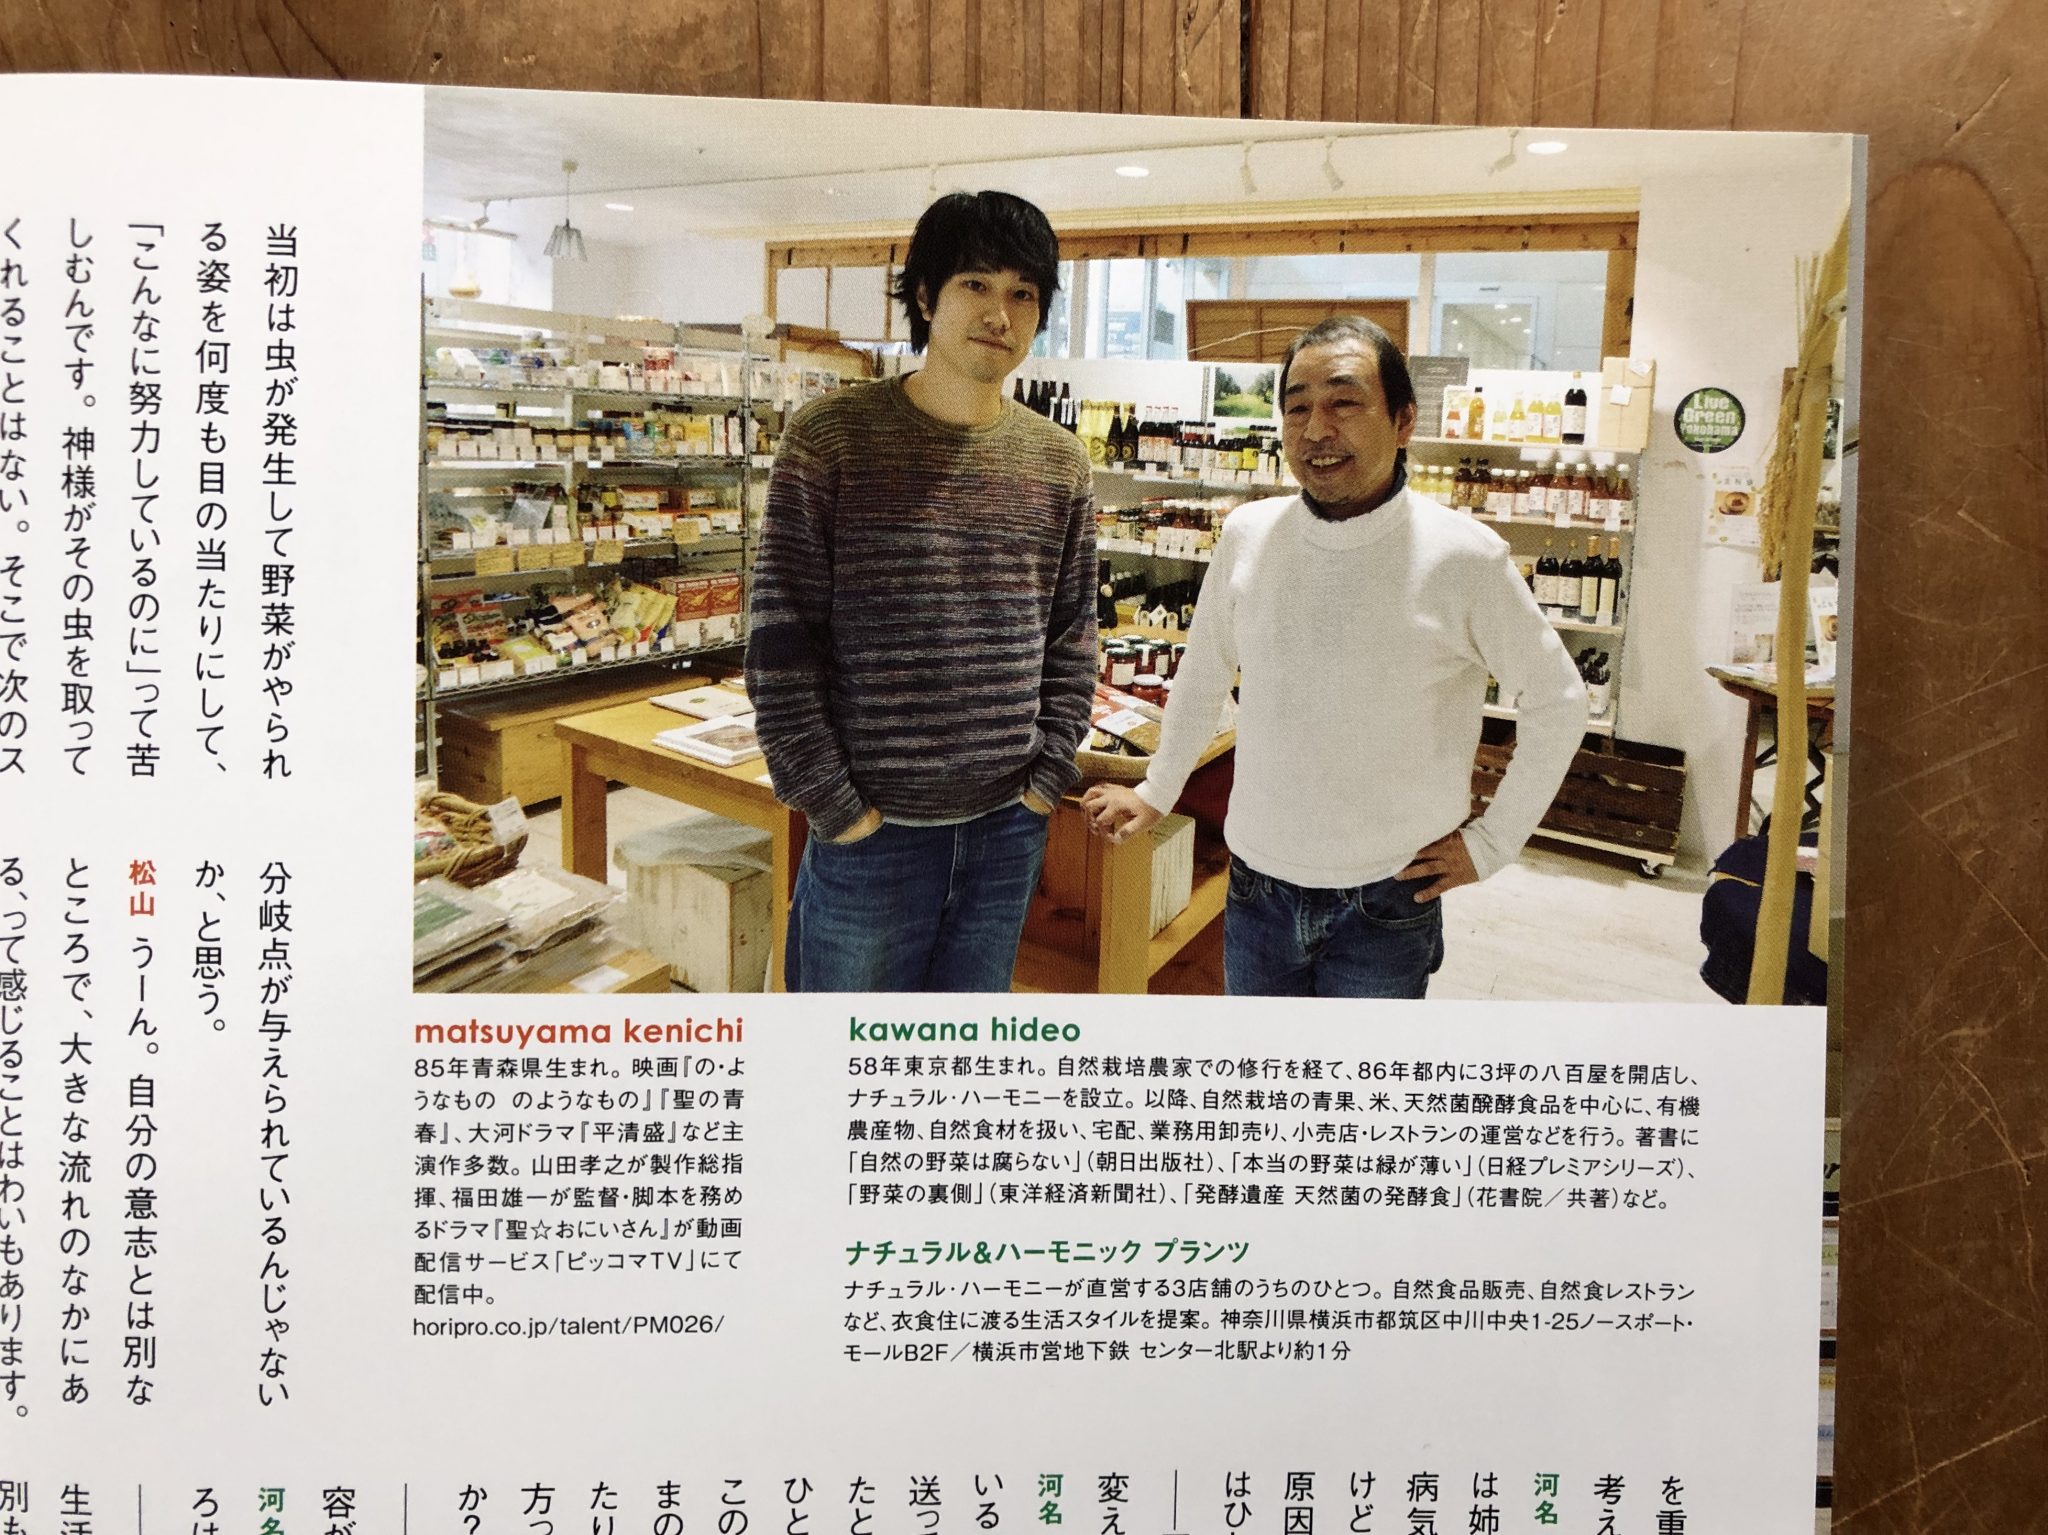 メディア情報 俳優 松山ケンイチさんと雑誌 ピクトアップ で対談しました ナチュラル ハーモニー